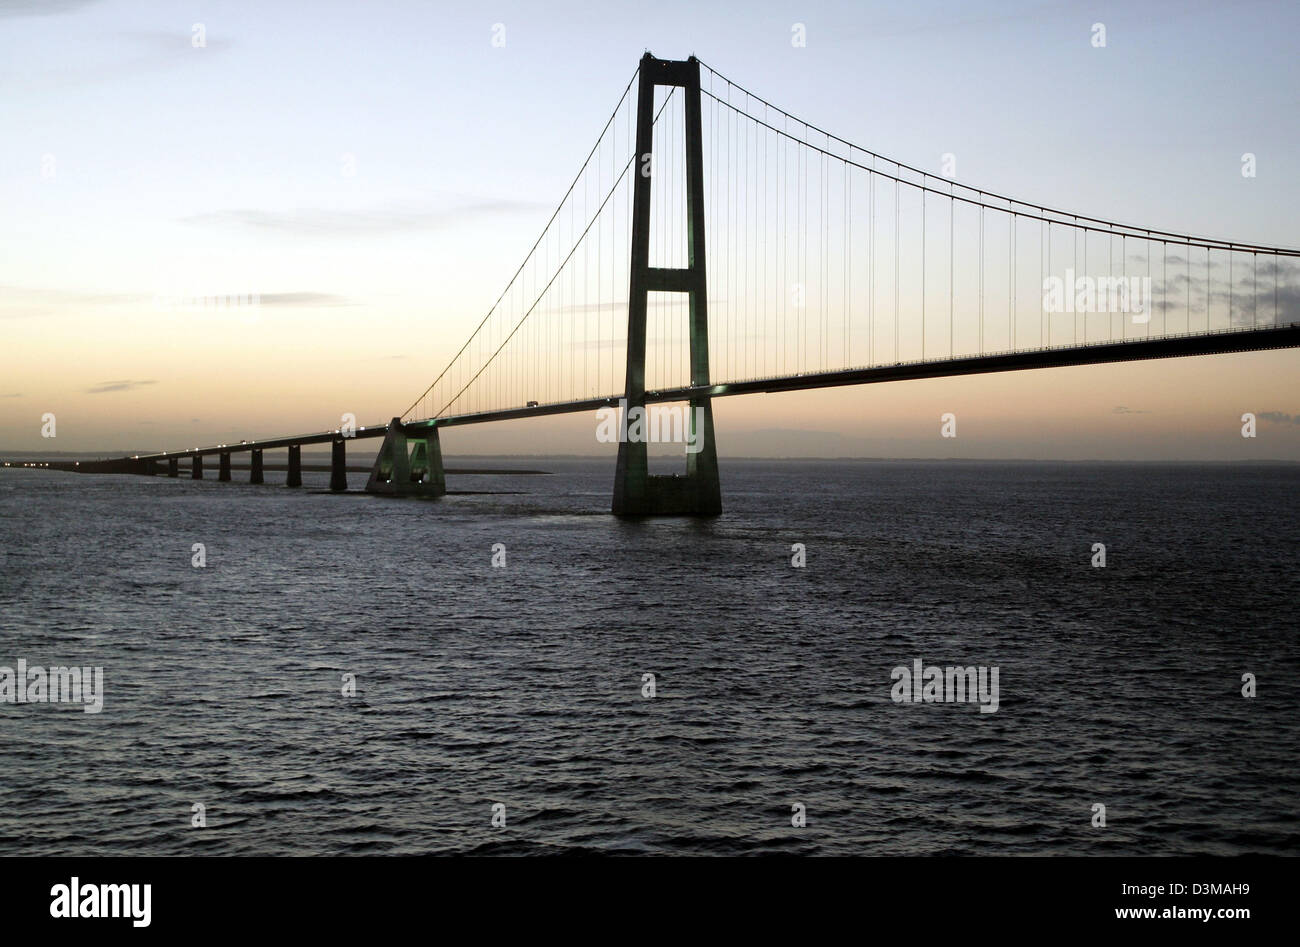 (Afp) - La photo montre le pont Storebelt, Danemark, 23 octobre 2005. Le Storebelt pont a été ouvert à la circulation le 14 juin 1998 et offre une nouvelle voiture et de liaison ferroviaire entre les îles danoises de Funen et la Nouvelle-Zélande. Ses pylônes sont l'altitude la plus élevée du Danemark et le pont sur le Grand Belt comme un monument visible à grande échelle. Photo : Ingo Wagner Banque D'Images